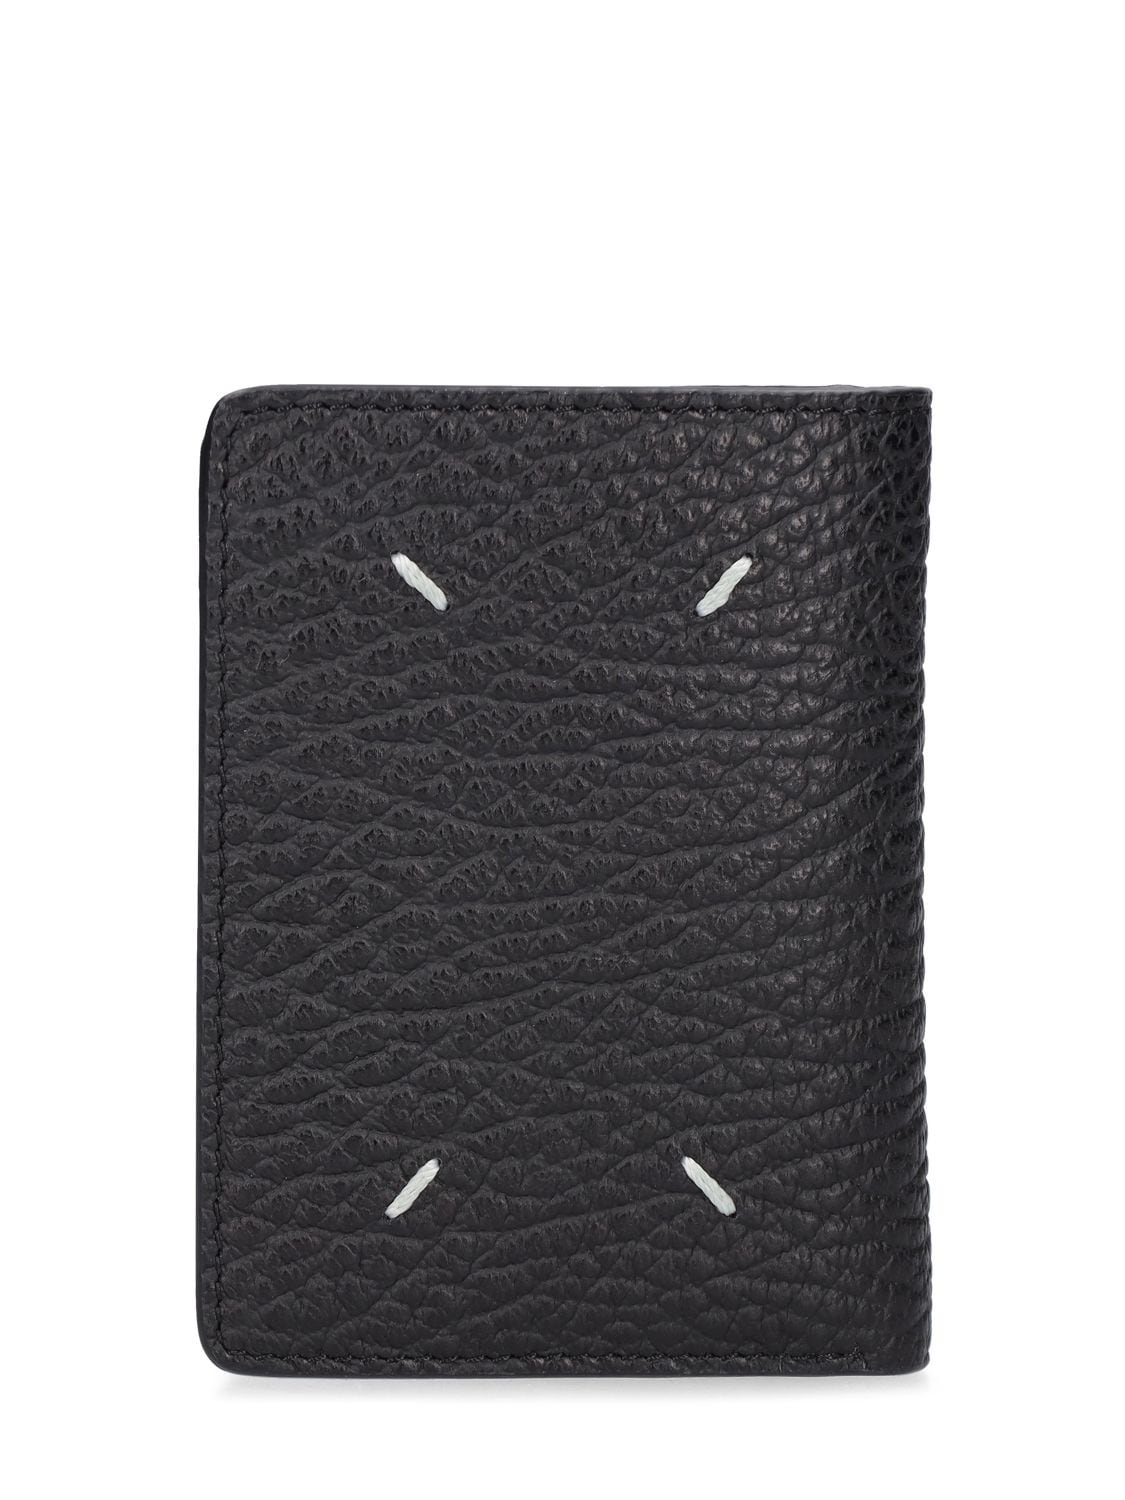 MAISON MARGIELA Grainy Leather Flip Flap Wallet | Smart Closet